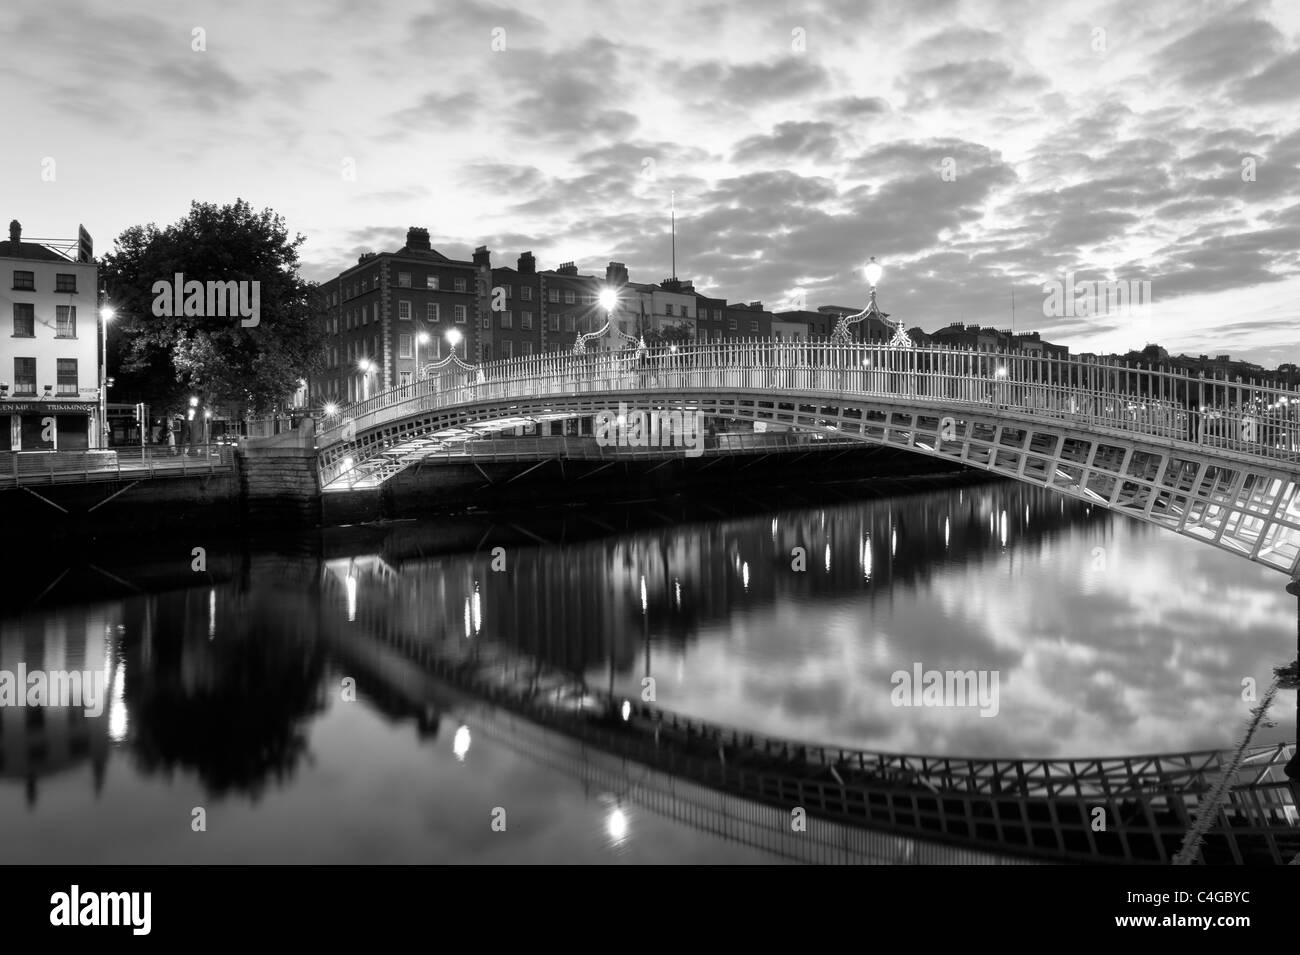 The Ha'penny bridge, Dublin, Ireland Stock Photo